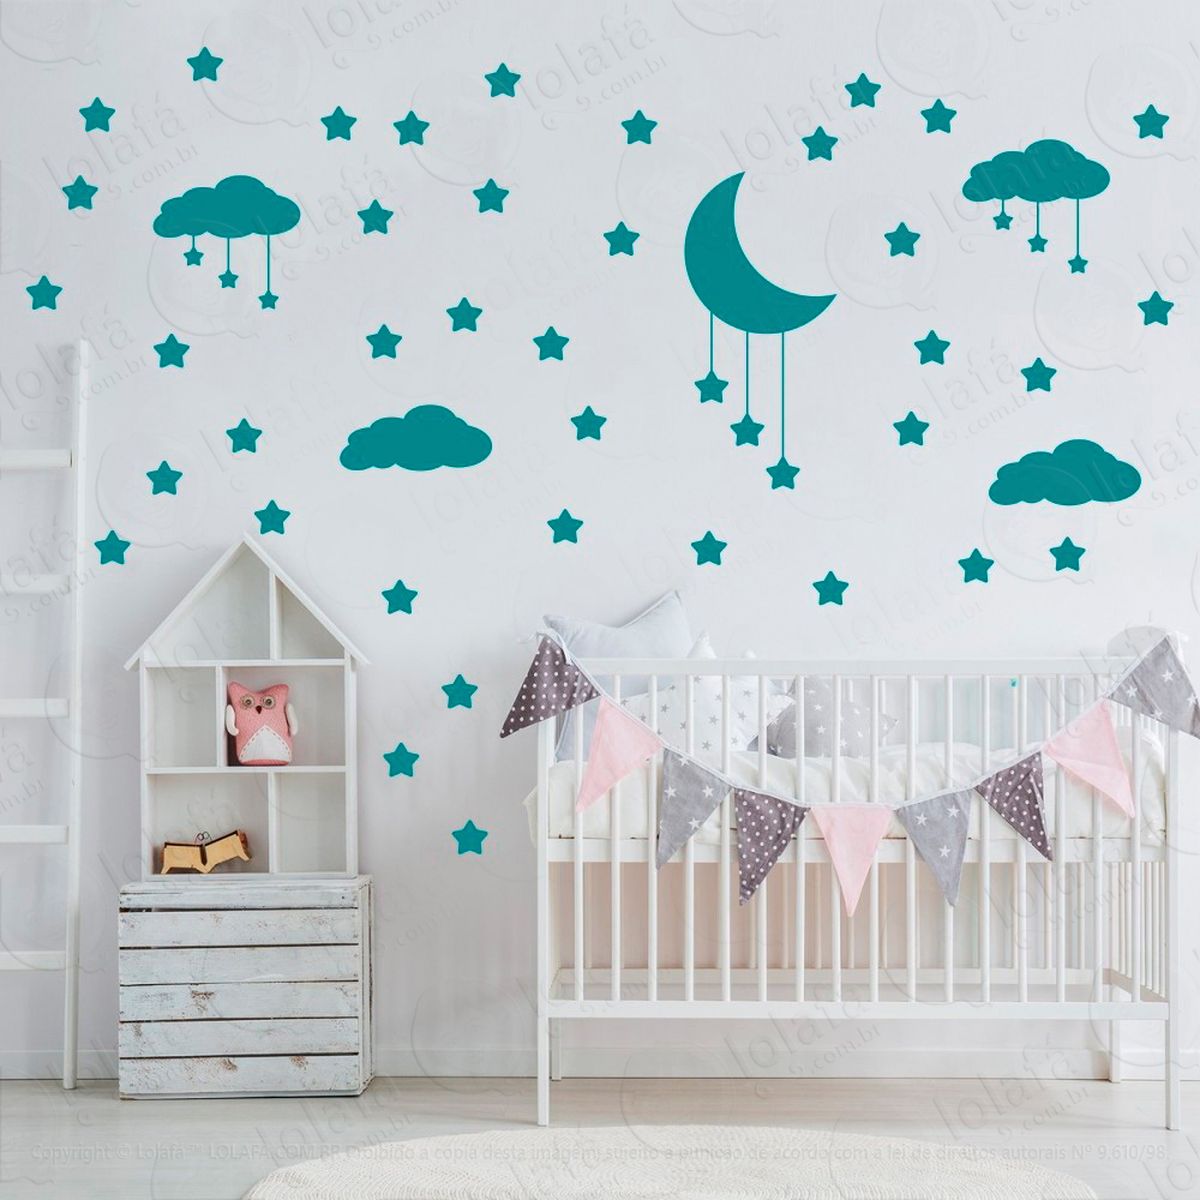 adesivos nuvens estrelas e lua 60 peças adesivos para quarto de bebê infantil - mod:746